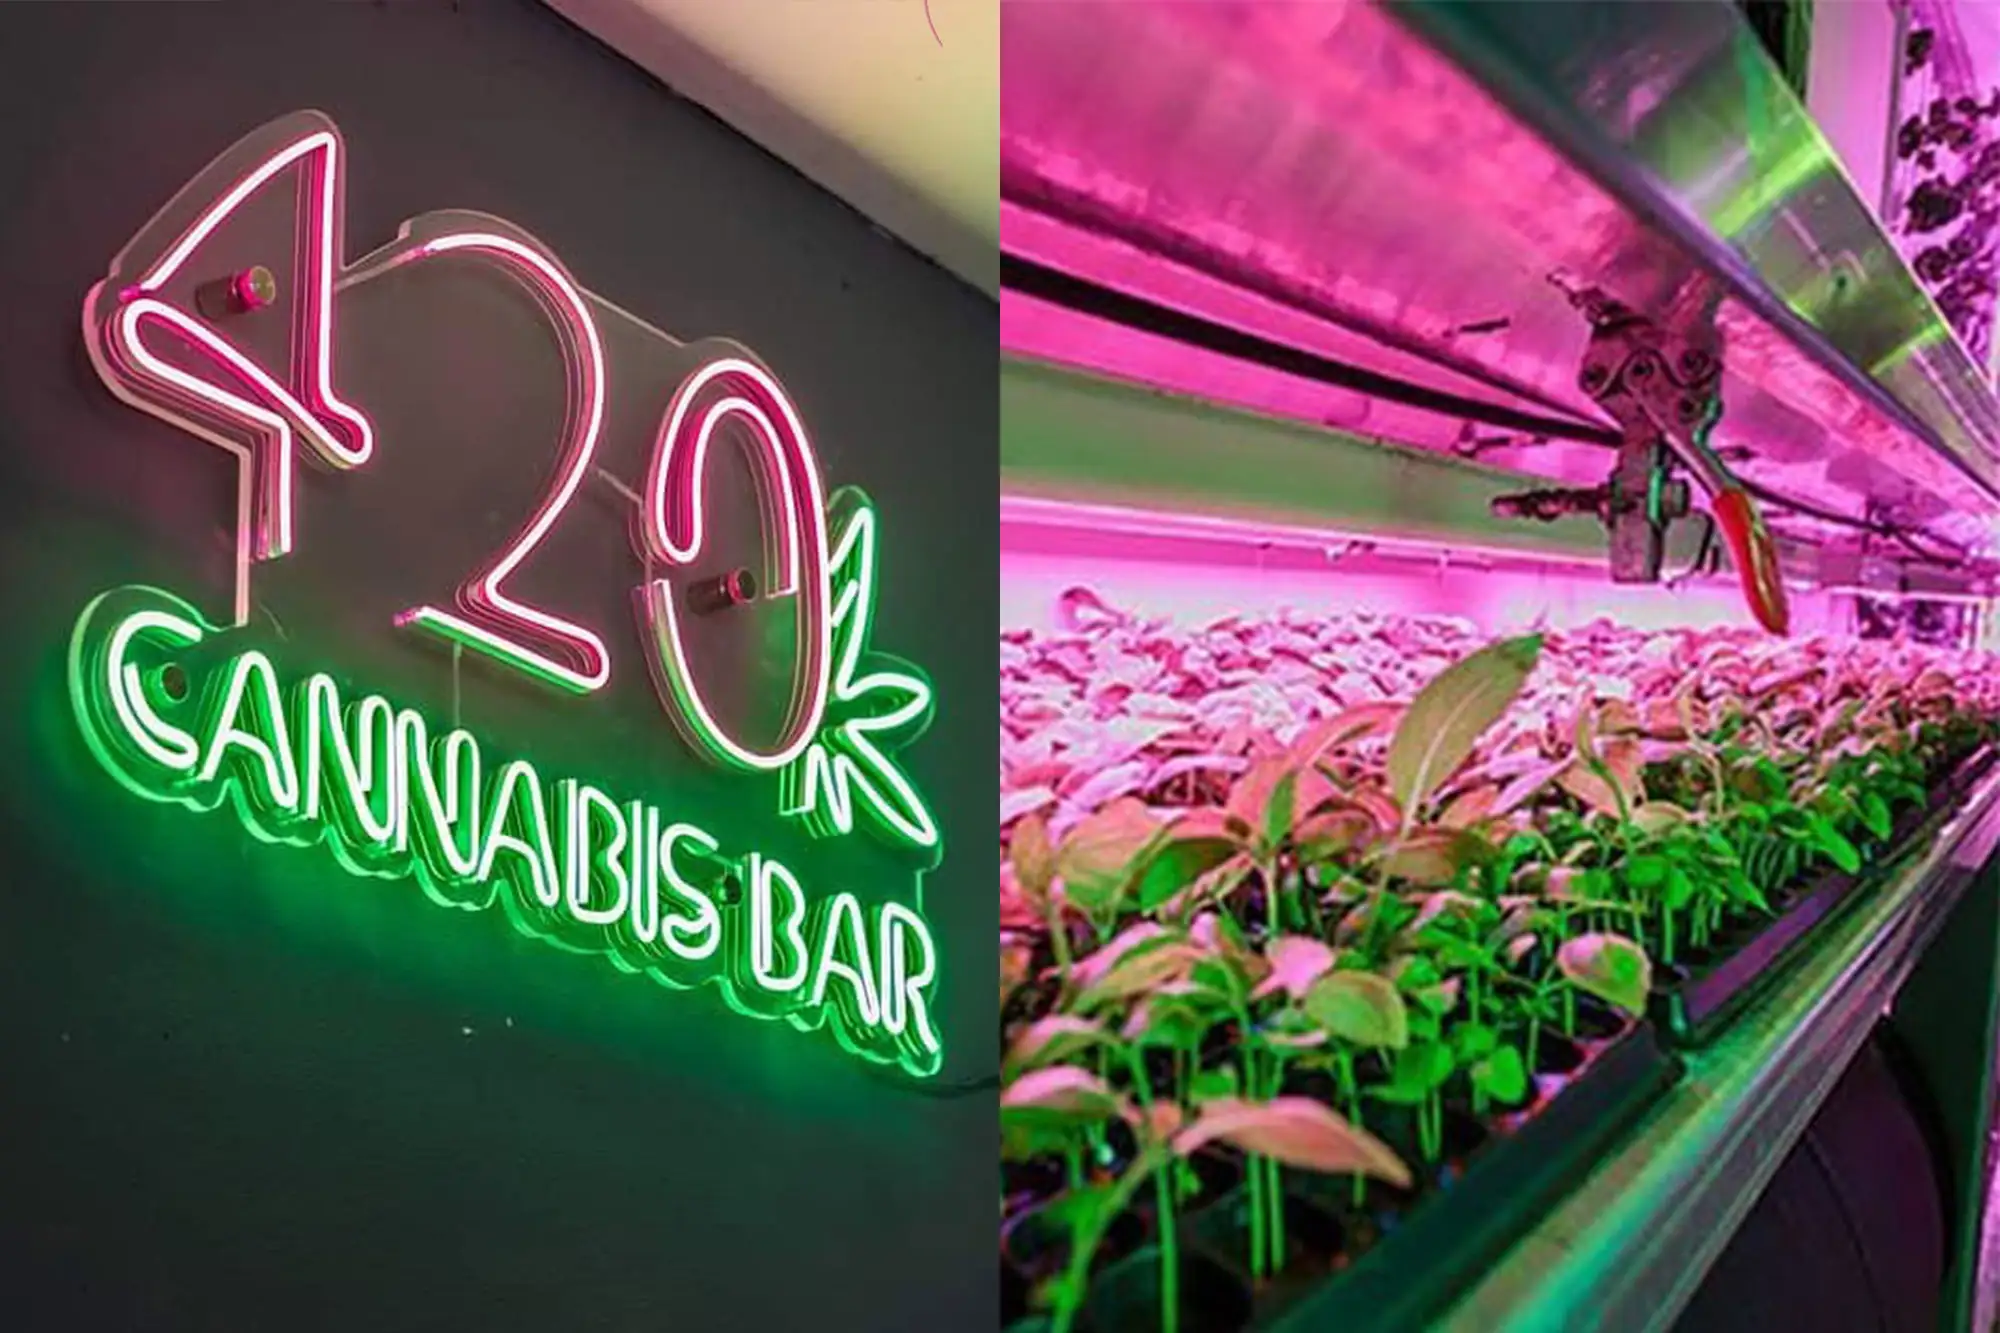 首家曼谷大麻餐廳開張 420大麻吧主推大麻餐點 （圖片來源：420 Cannabis Bar官方IG帳號）